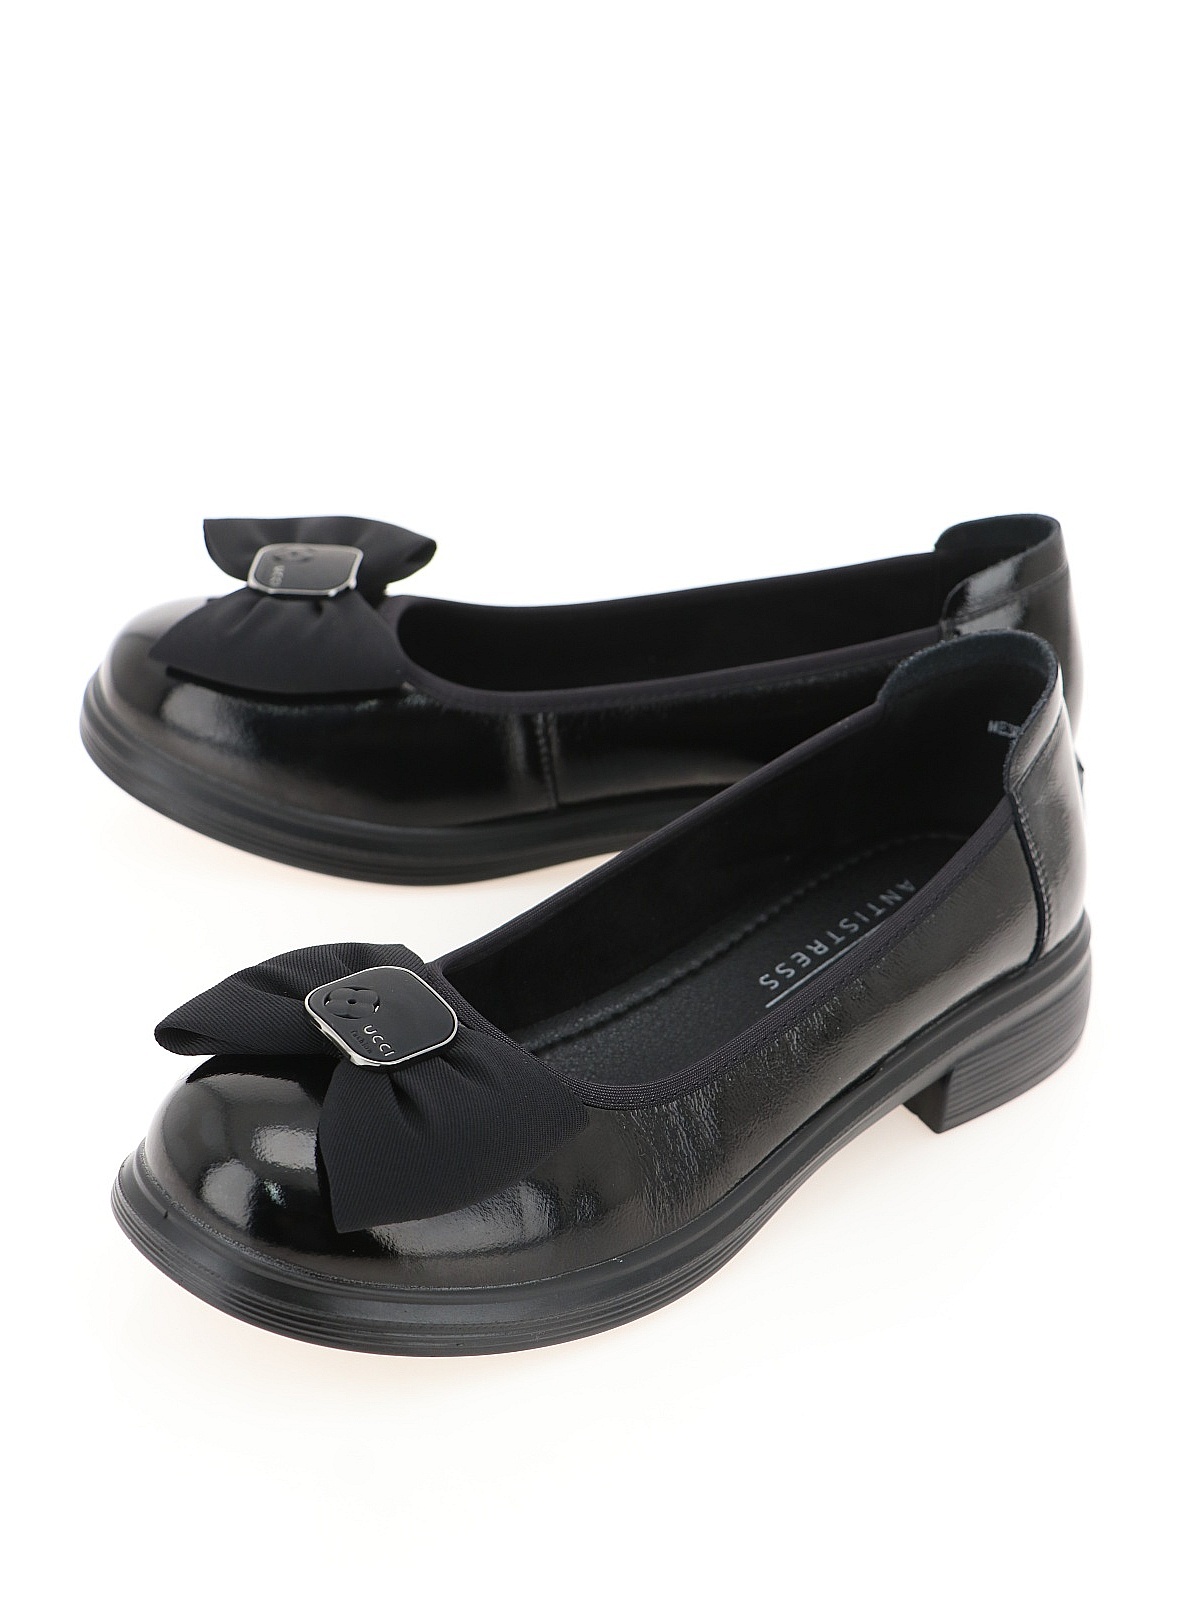 Туфли женские Baden ME306-02 черные 36 RU